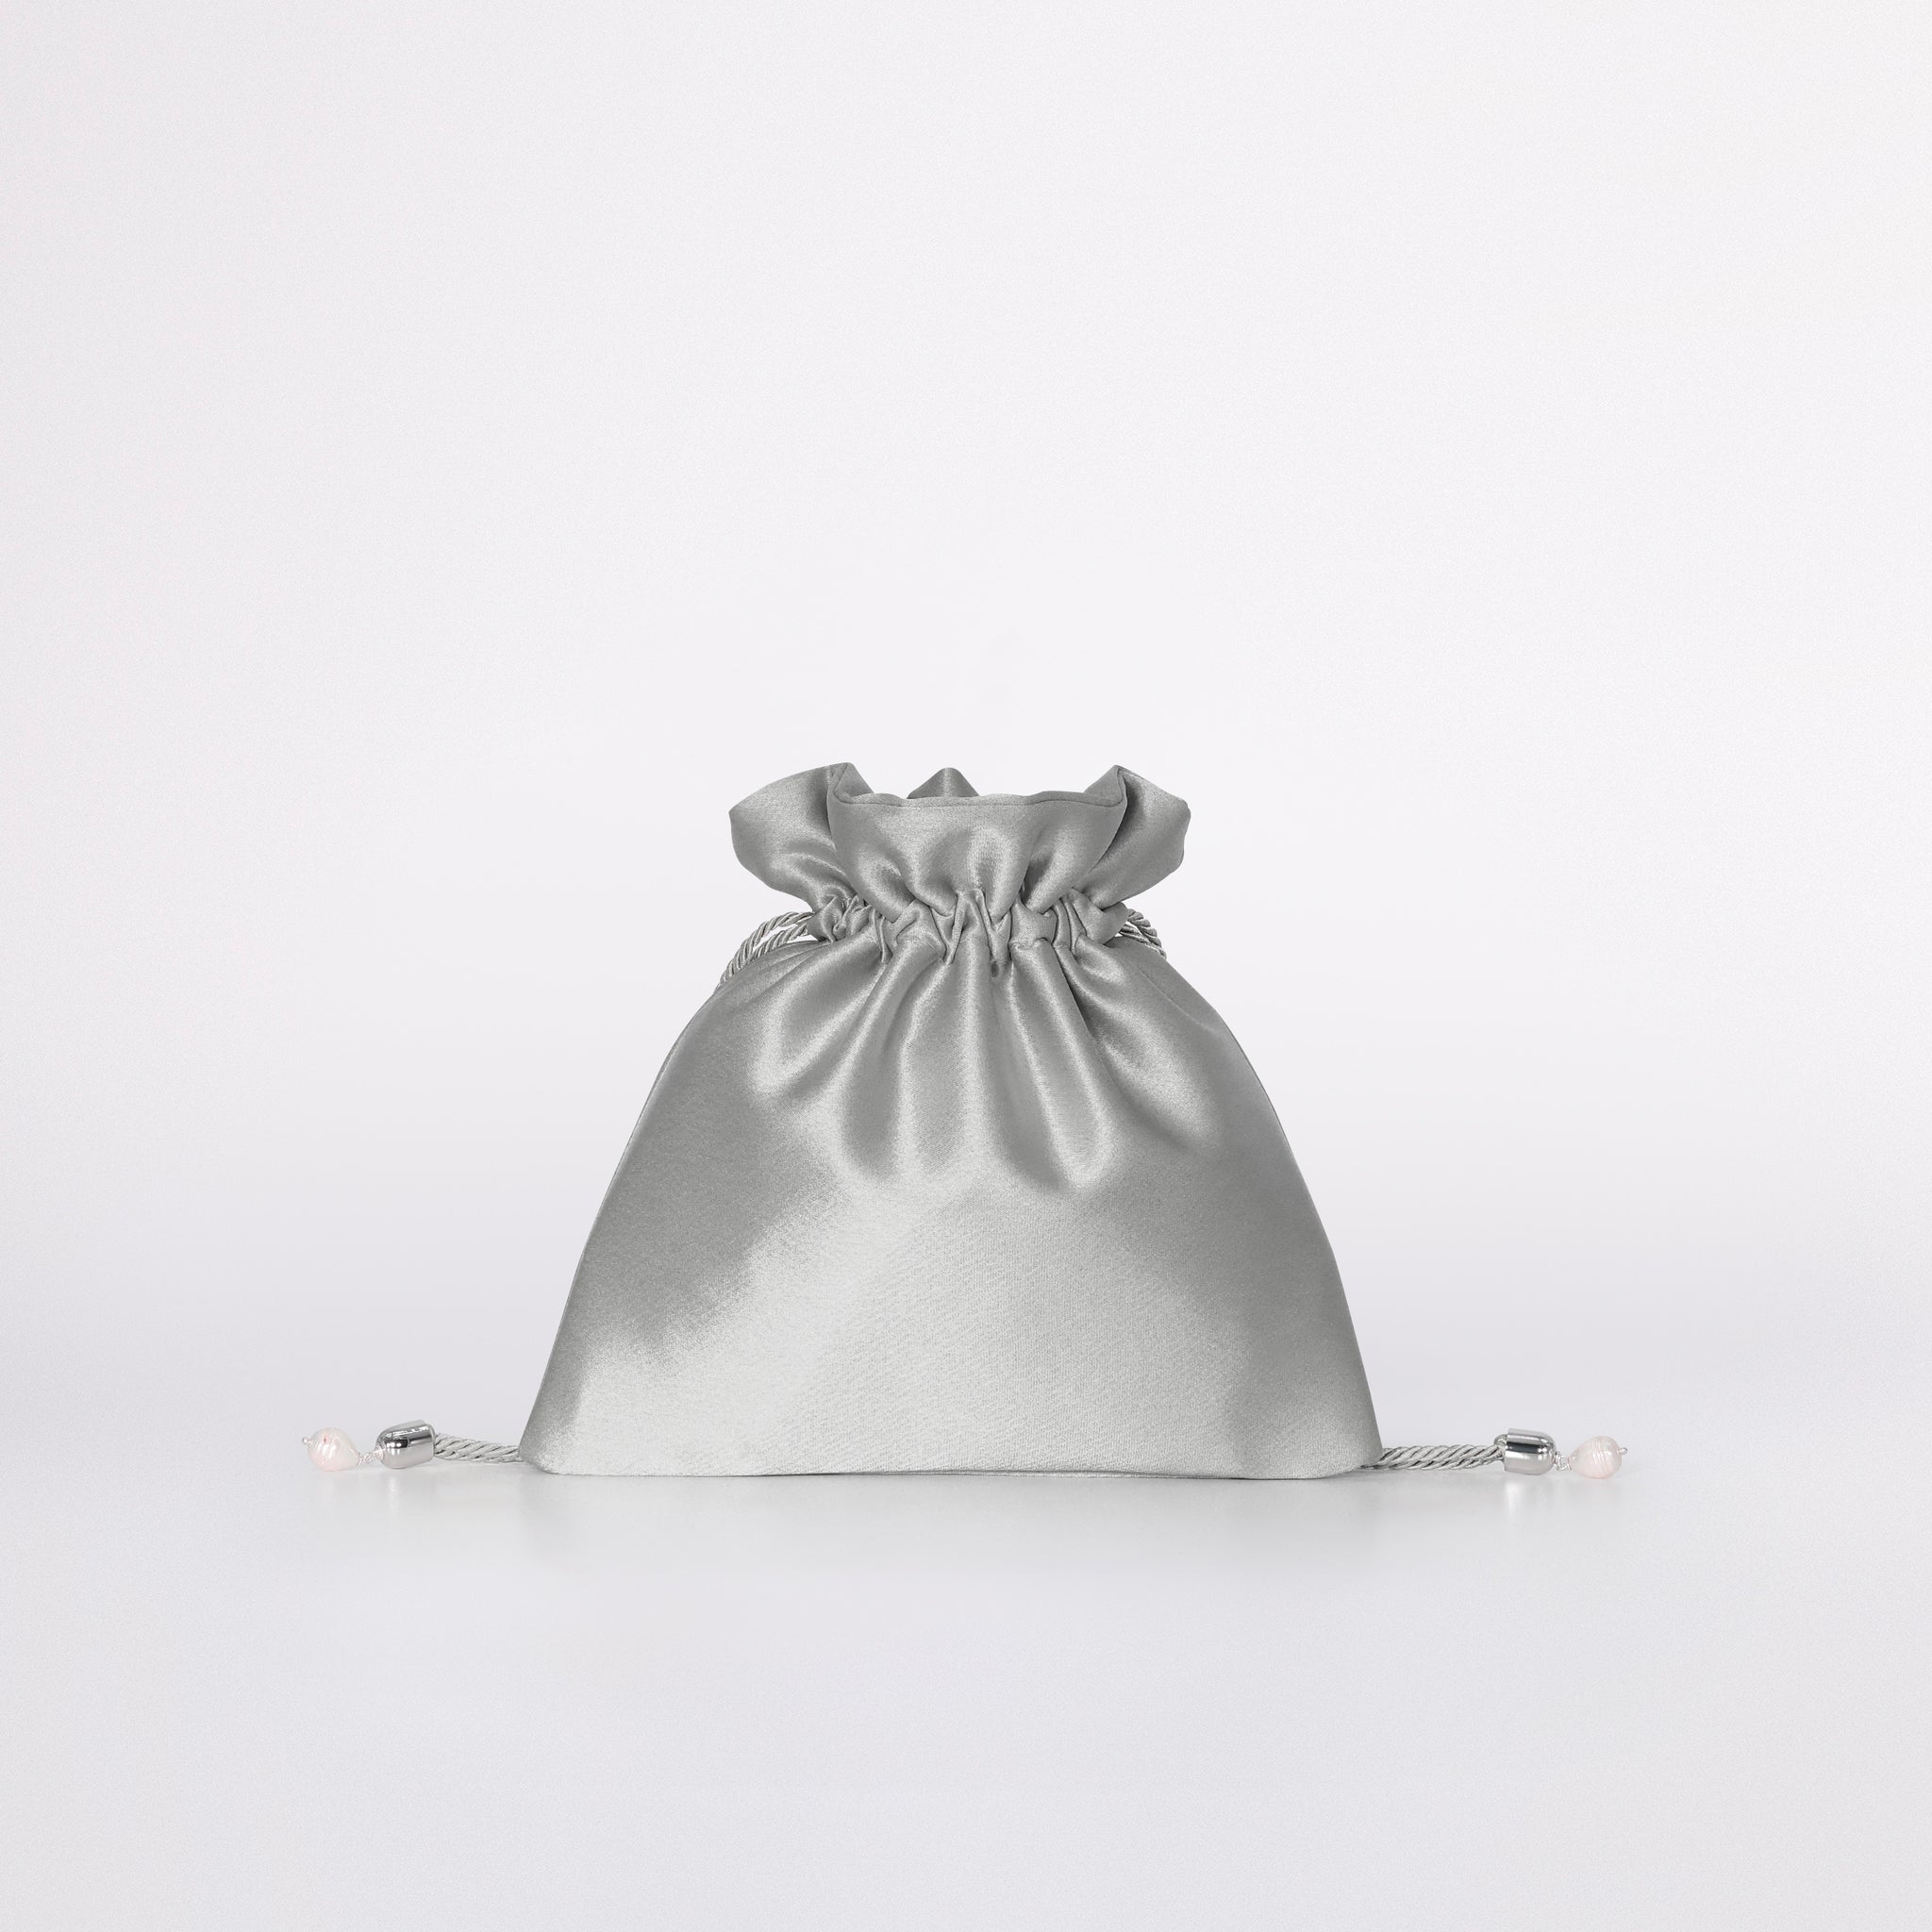 Mini Bag in colorazione grigio argento